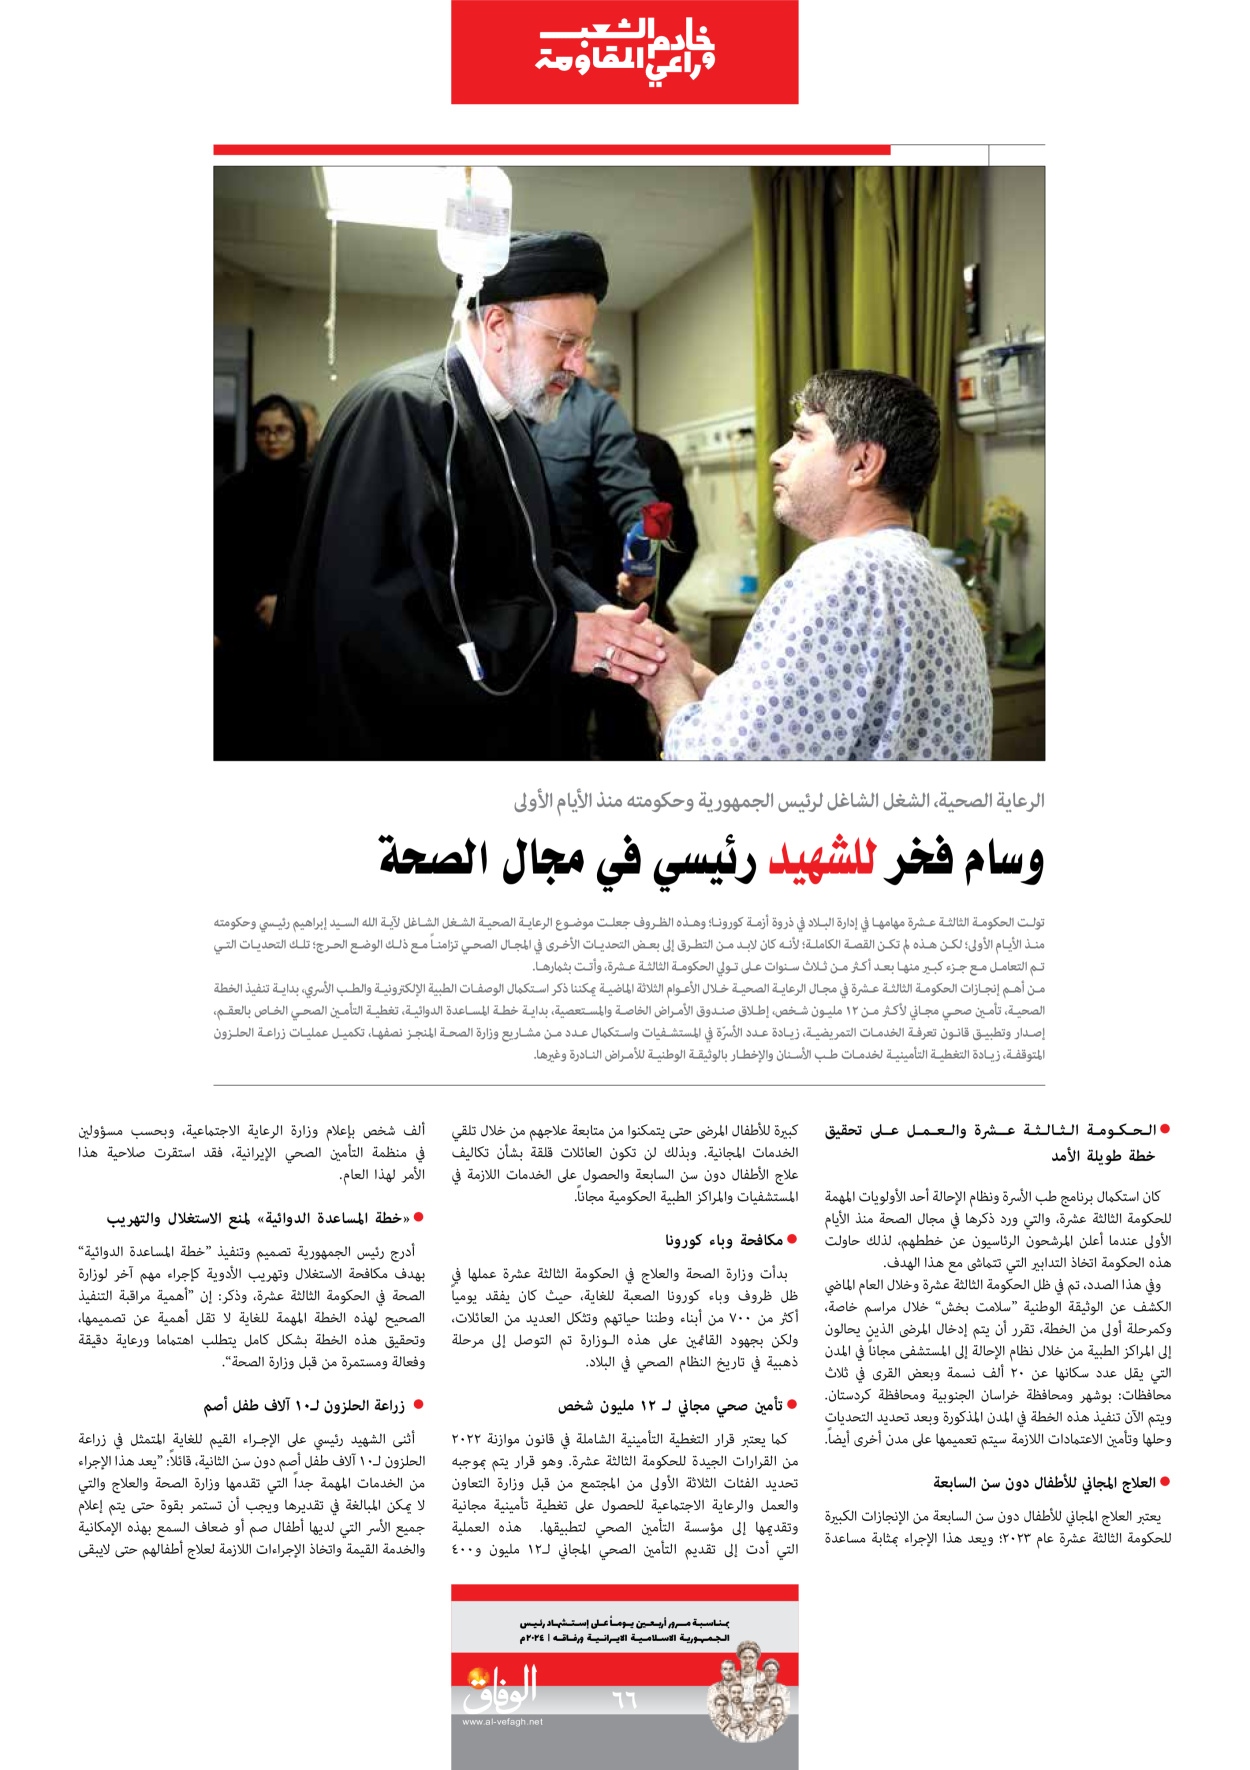 صحیفة ایران الدولیة الوفاق - ملحق ویژه نامه چهلم شهید رییسی - ٢٩ يونيو ٢٠٢٤ - الصفحة ٦٦